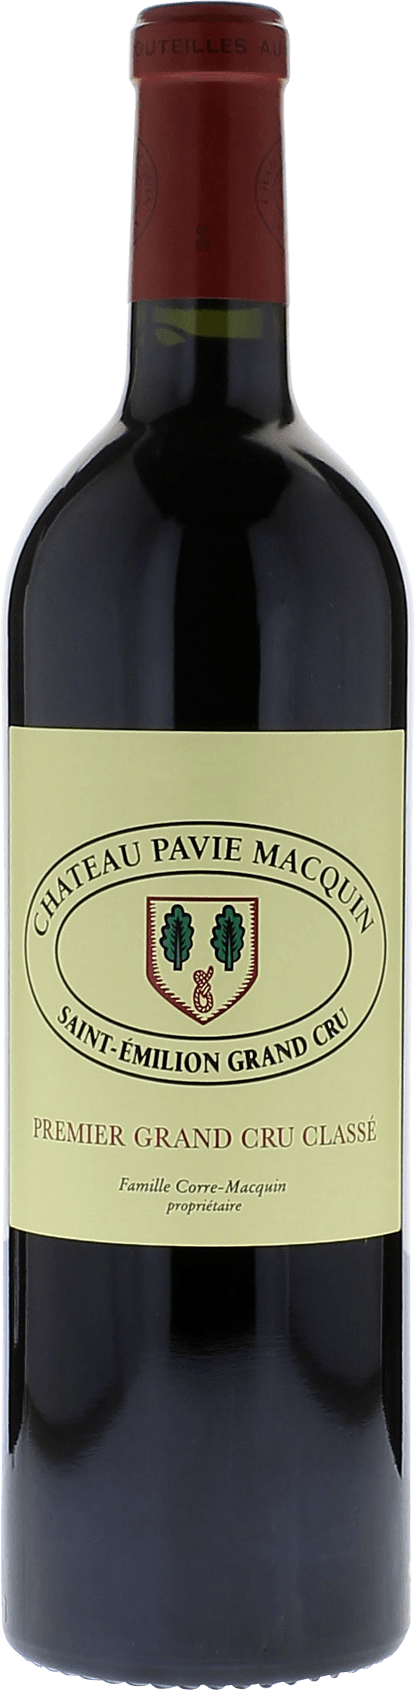 Pavie macquin 2016 1er Grand cru B class Saint-Emilion, Bordeaux rouge